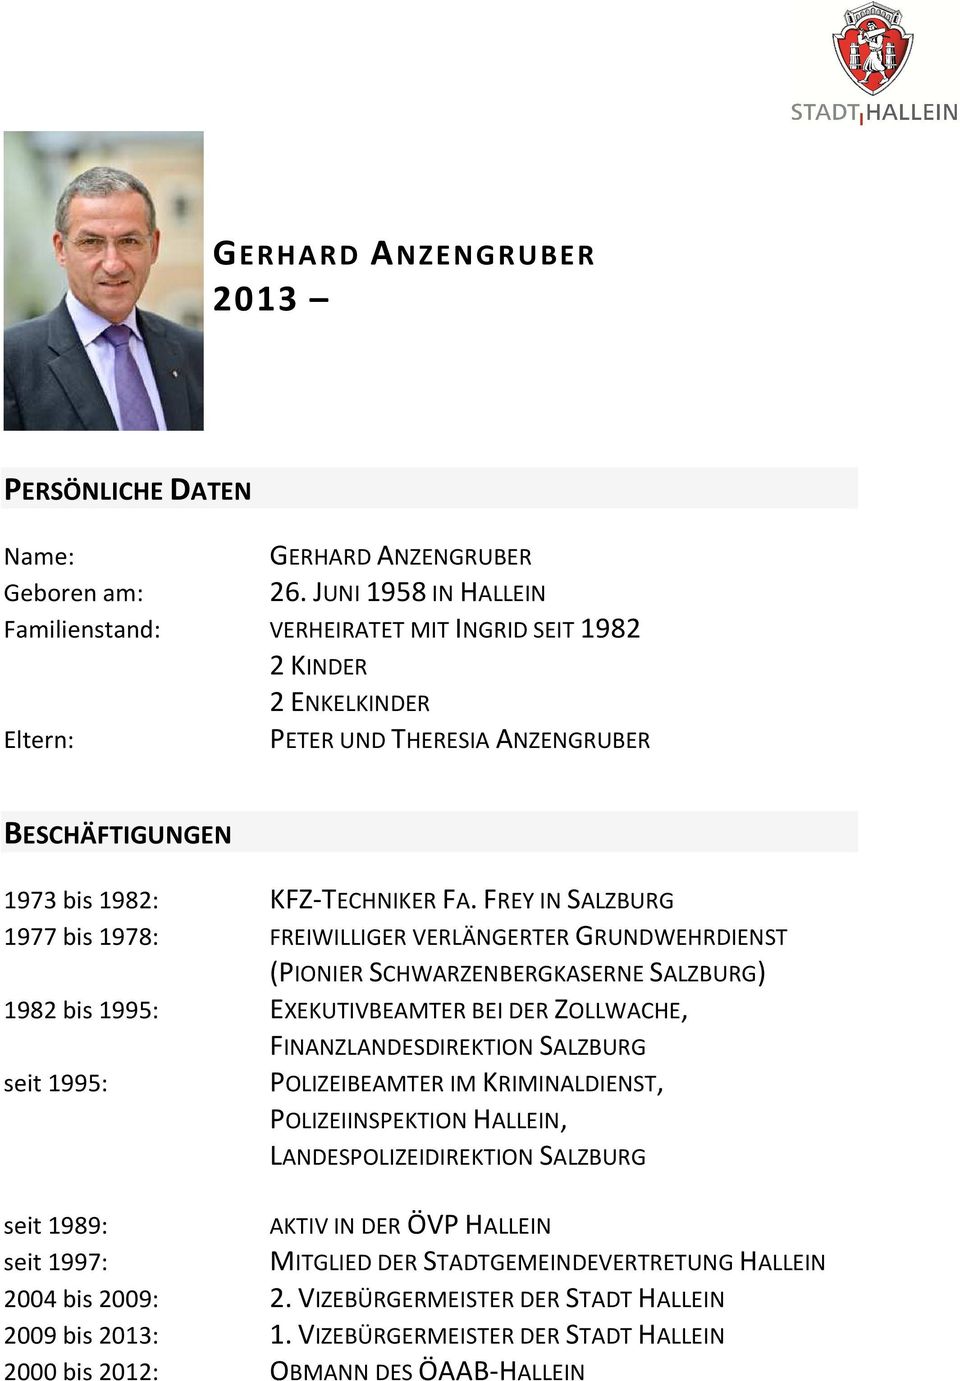 FREY IN SALZBURG 1977 bis 1978: FREIWILLIGER VERLÄNGERTER GRUNDWEHRDIENST (PIONIER SCHWARZENBERGKASERNE SALZBURG) 1982 bis 1995: EXEKUTIVBEAMTER BEI DER ZOLLWACHE, seit 1995: FINANZLANDESDIREKTION